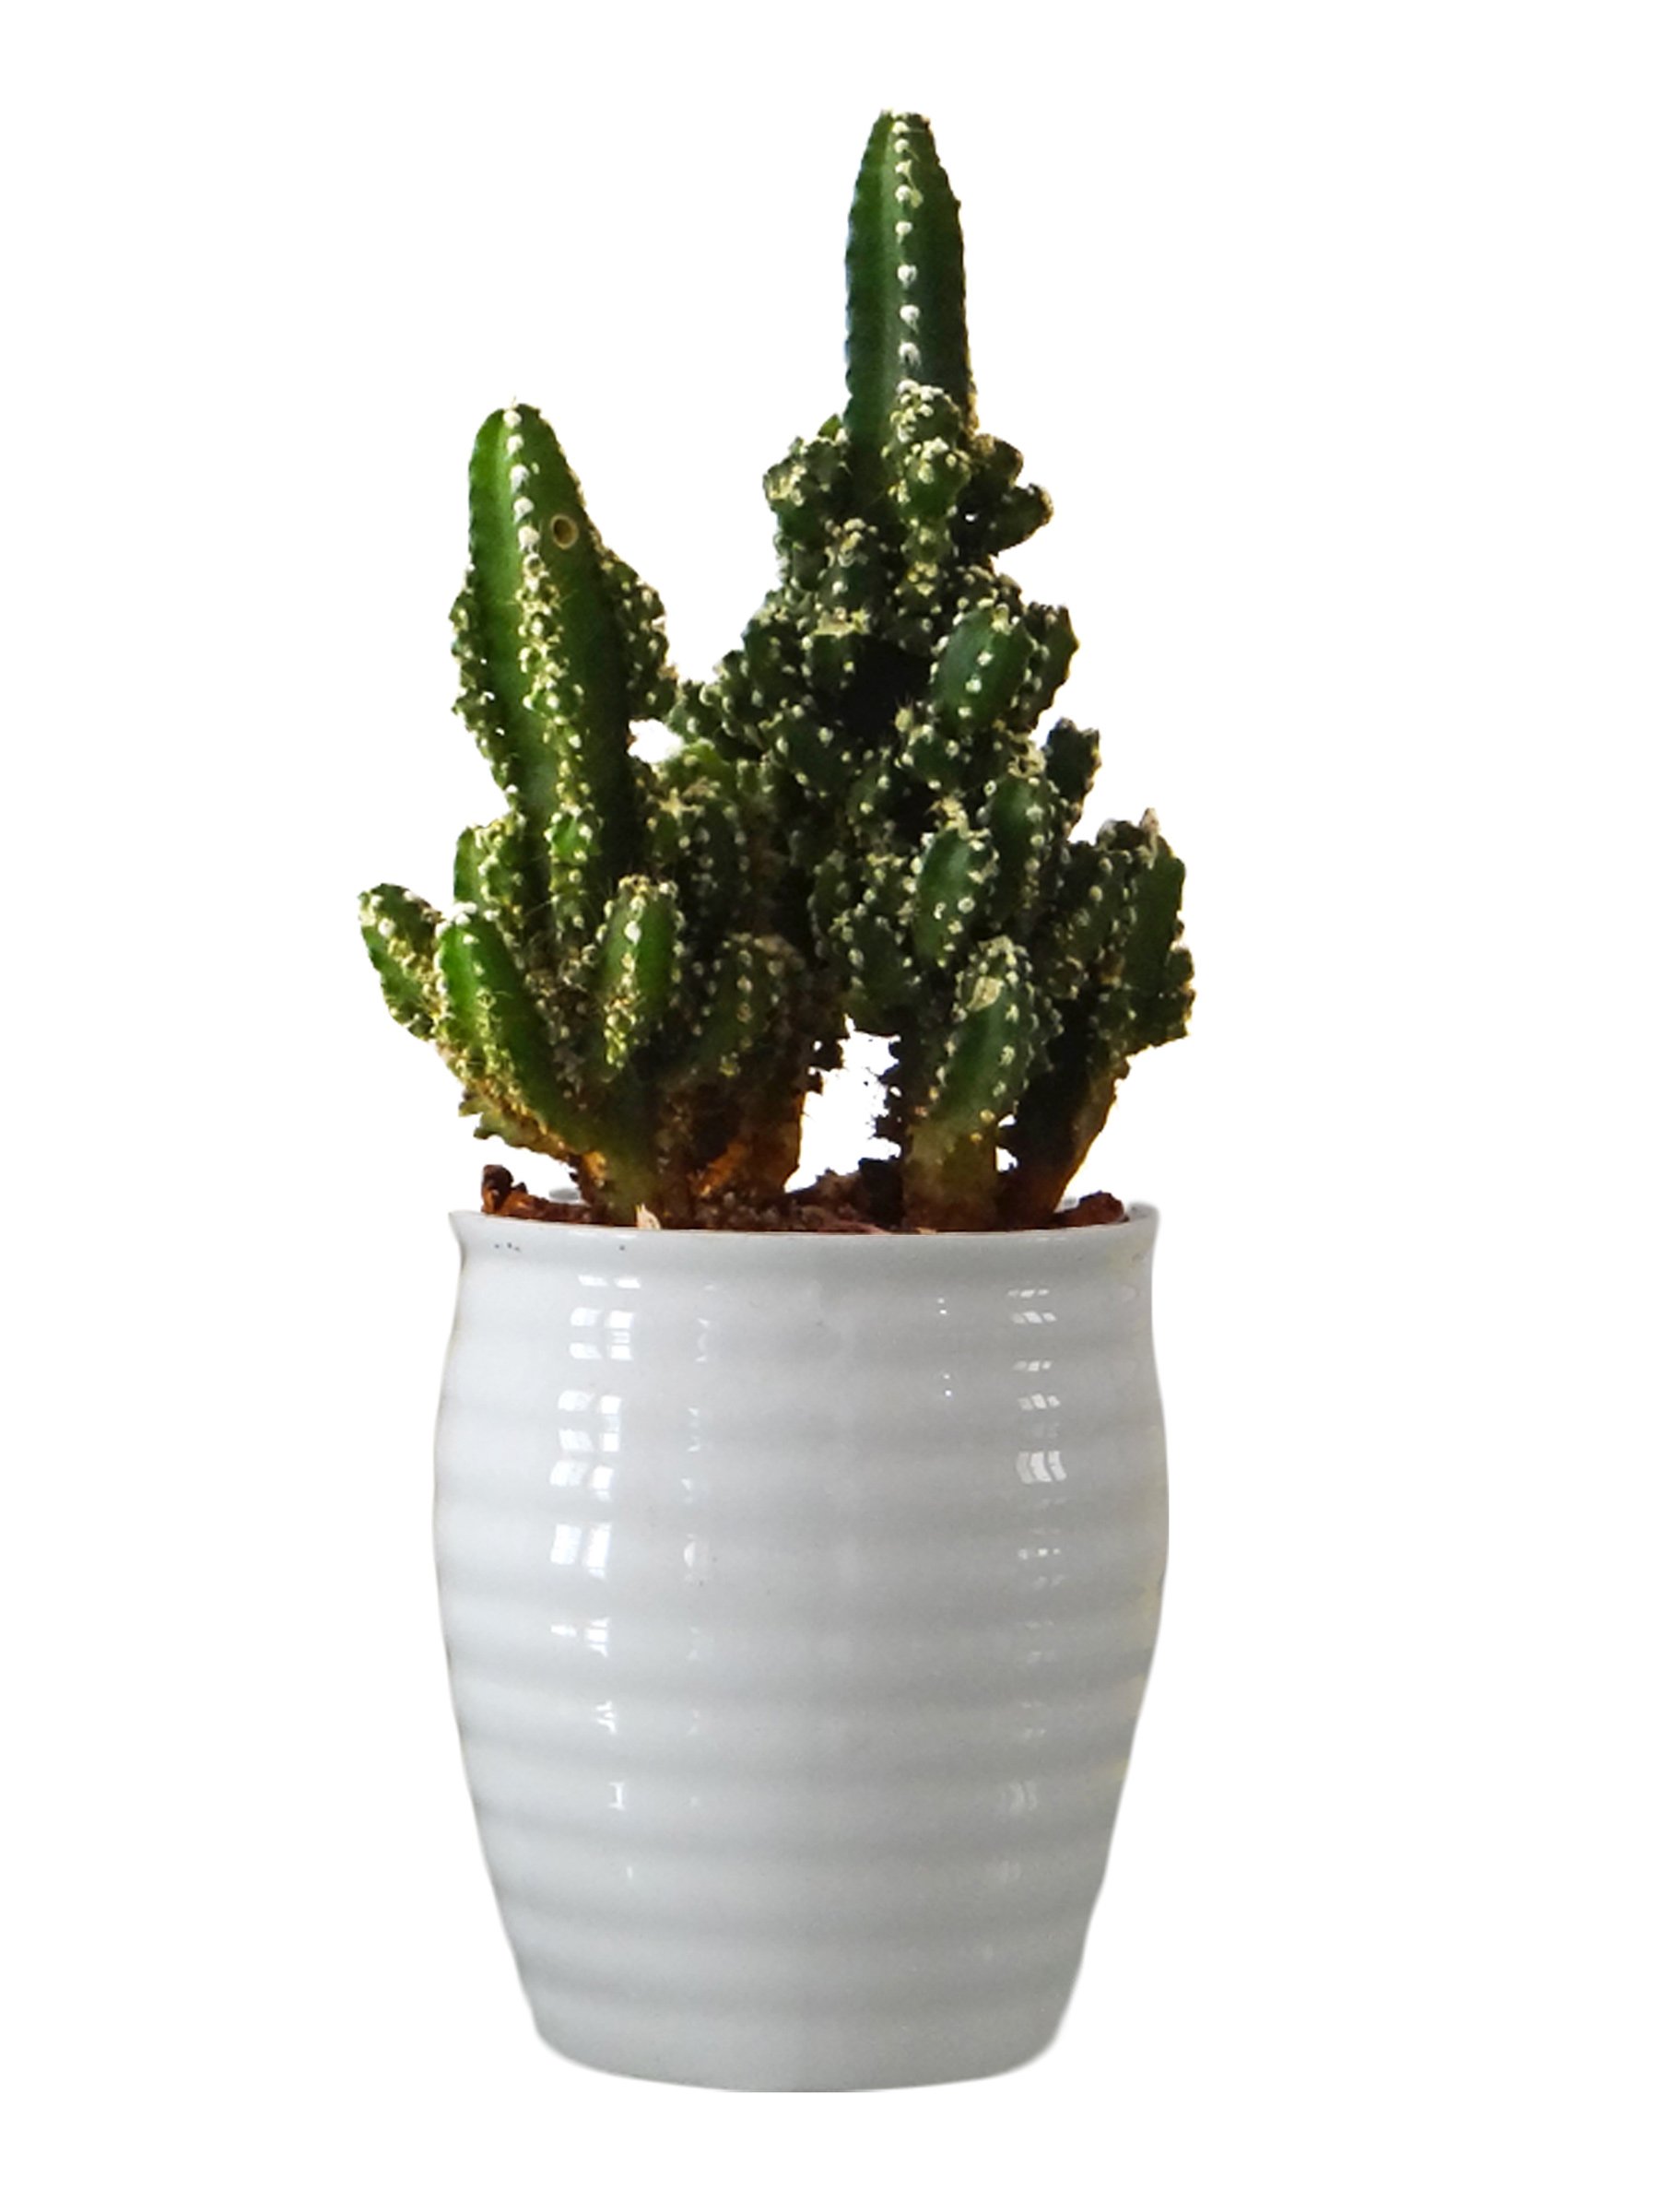 Cactus plant photo